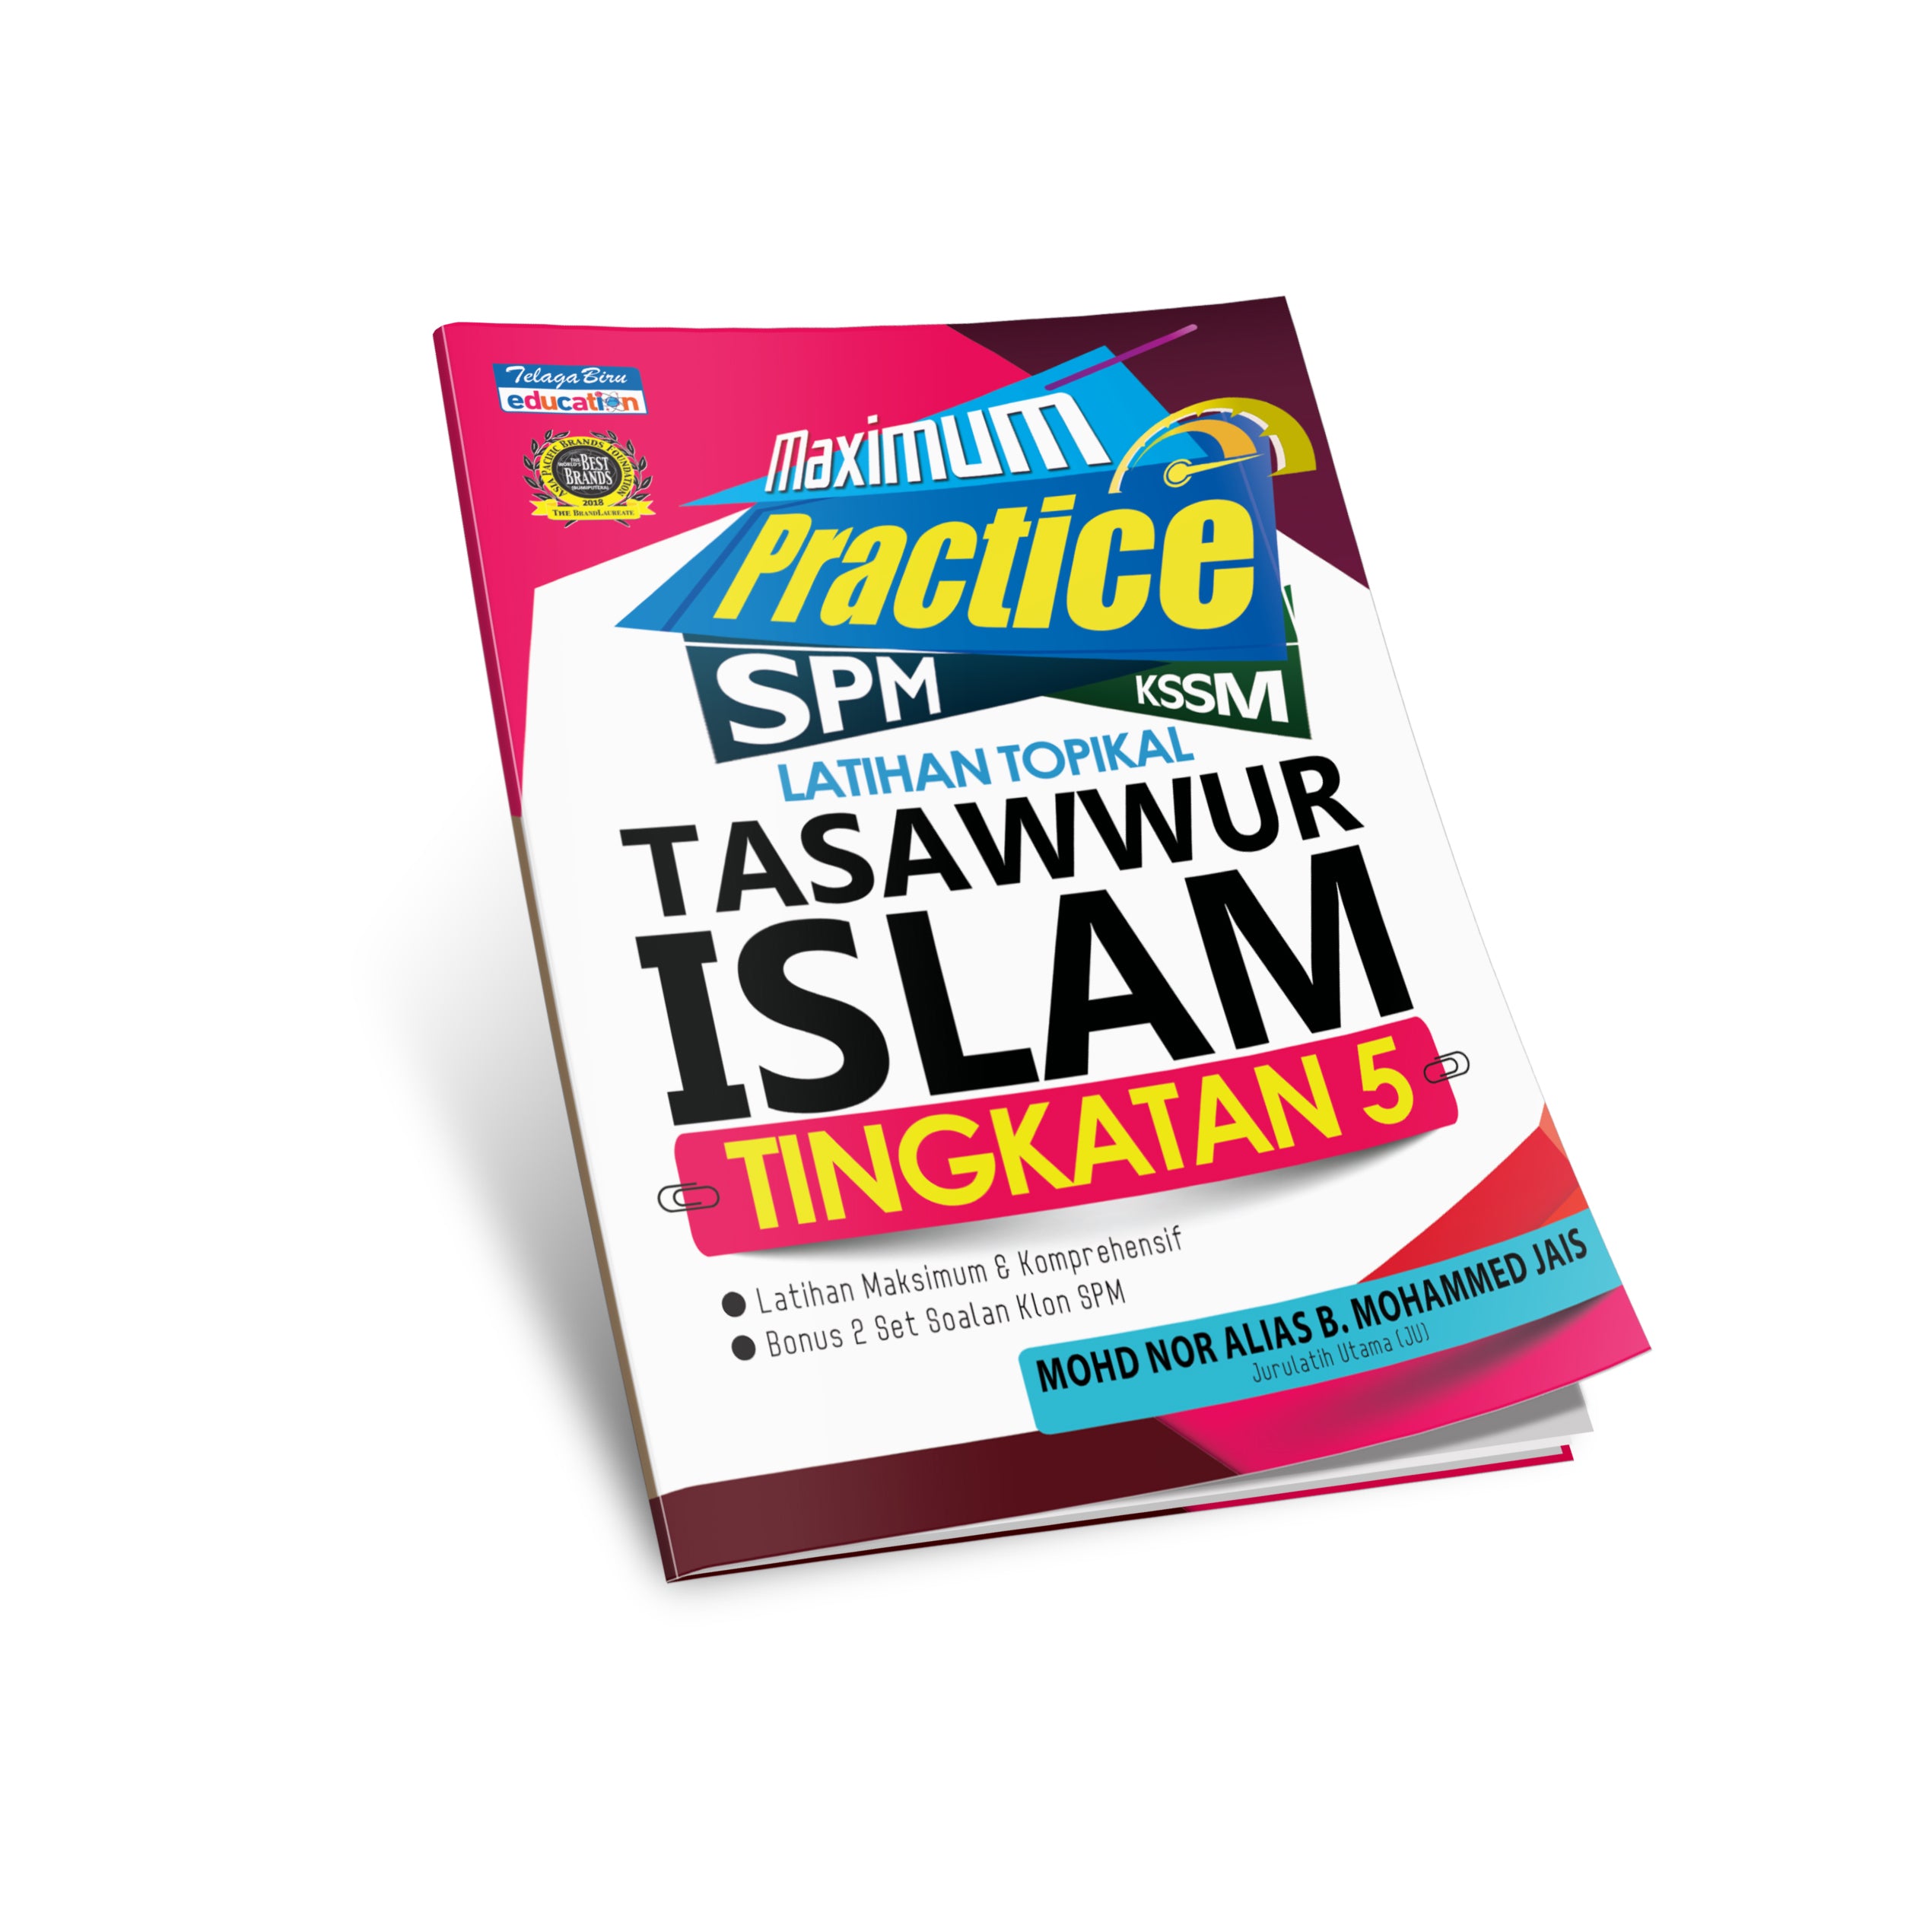 Maximum Practice SPM - Latihan Topikal Tasawwur Islam Tingkatan 5 - (TBBS1220)